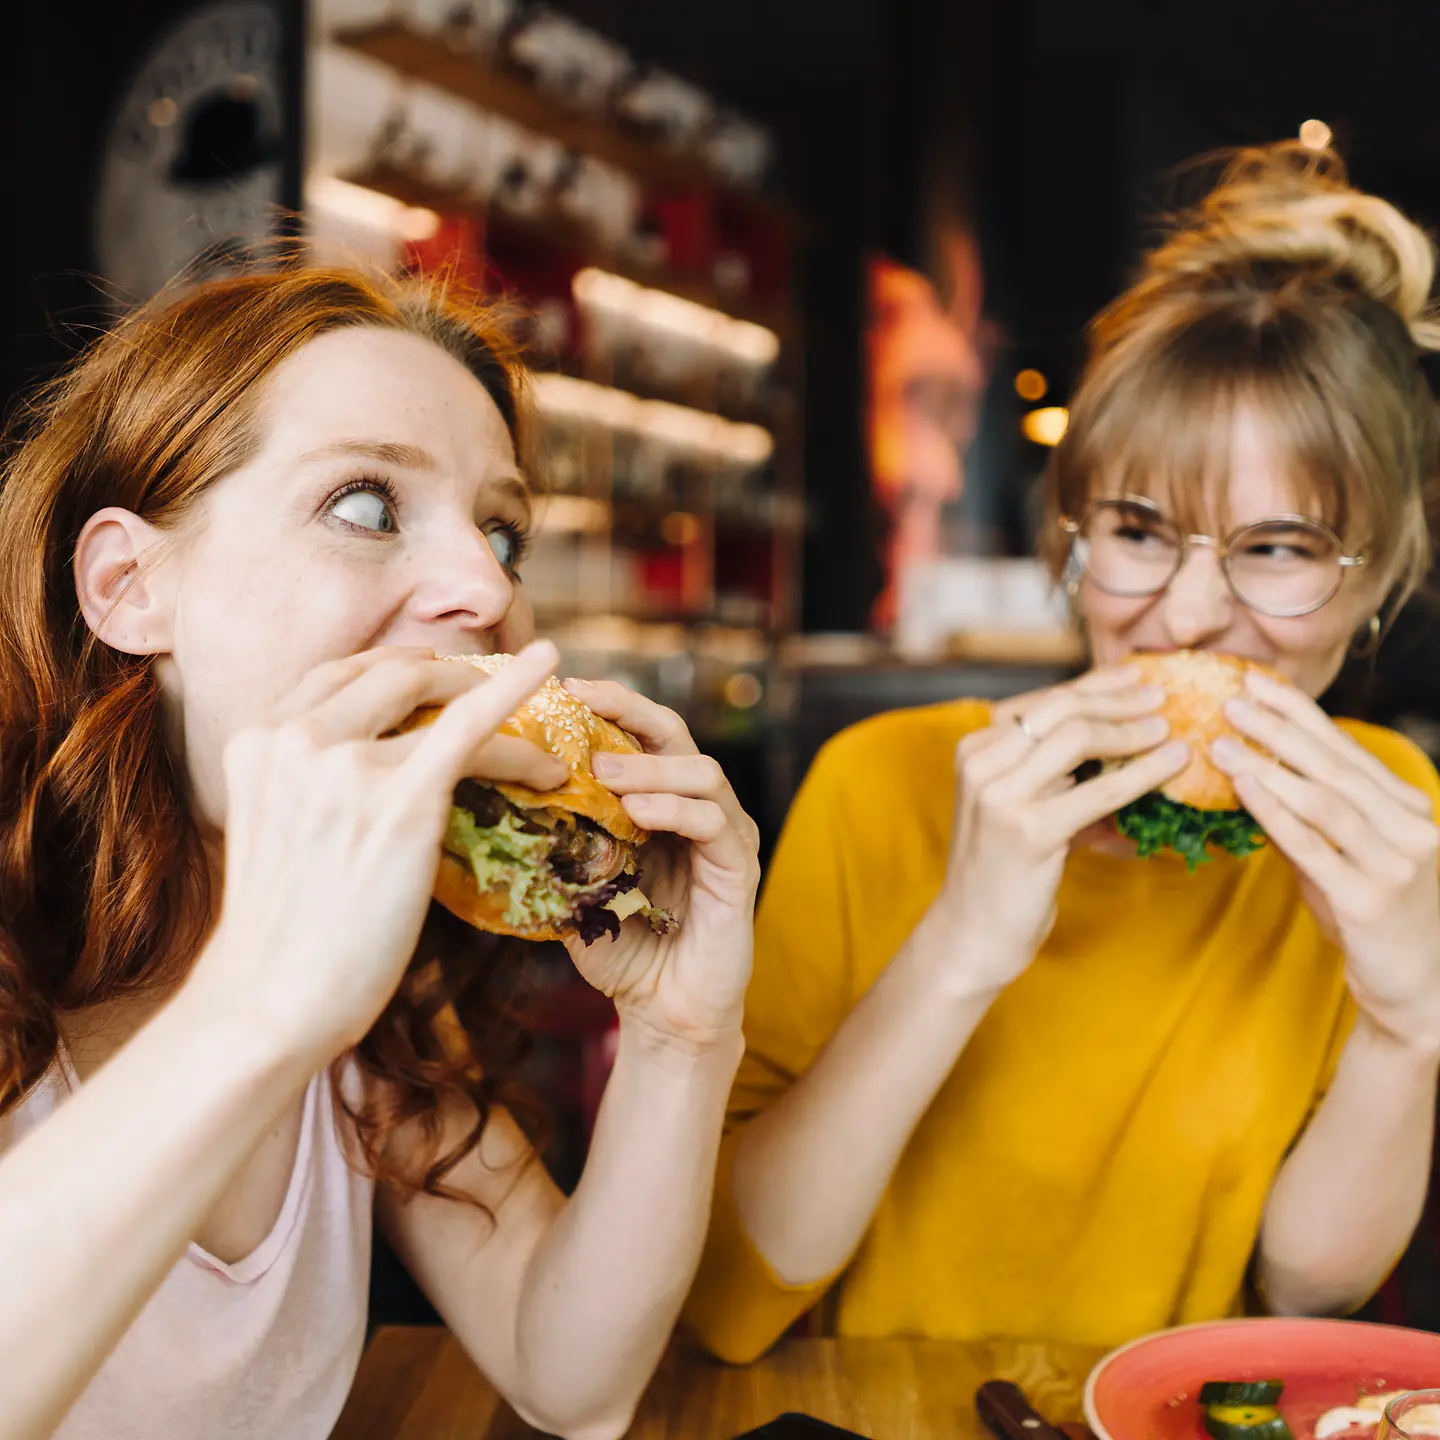 Zwei junge Frau sitzen in einem Restaurant und essen Burger